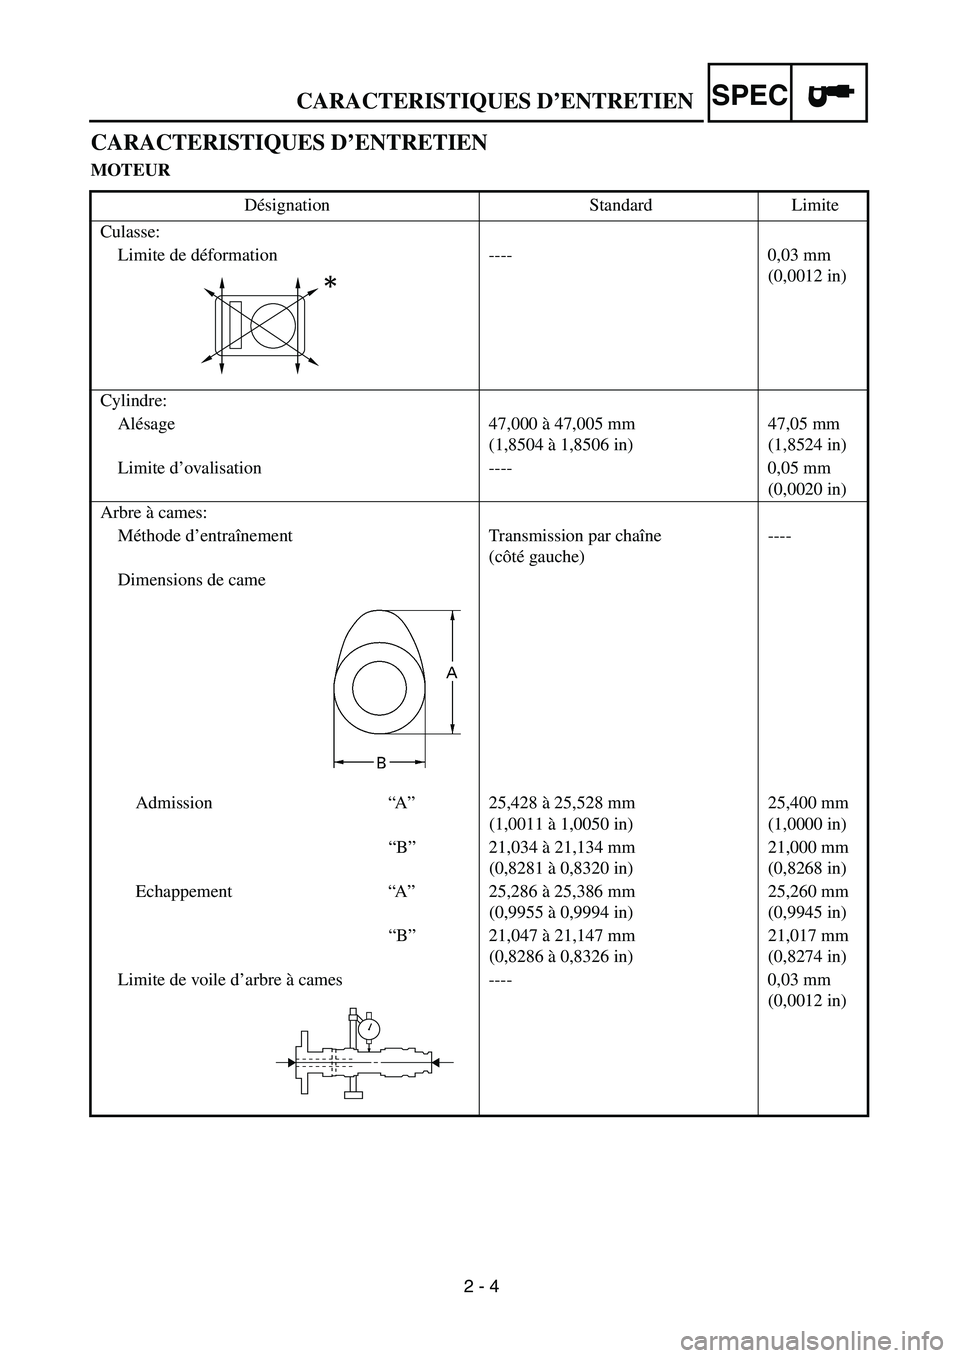 YAMAHA TTR90 2004  Owners Manual  
2 - 4 
CARACTERISTIQUES D’ENTRETIEN
SPEC
 
CARACTERISTIQUES D’ENTRETIEN 
MOTEUR 
Désignation Standard Limite
Culasse:
Limite de déformation ---- 0,03 mm 
(0,0012 in)
Cylindre:
Alésage 47,000 